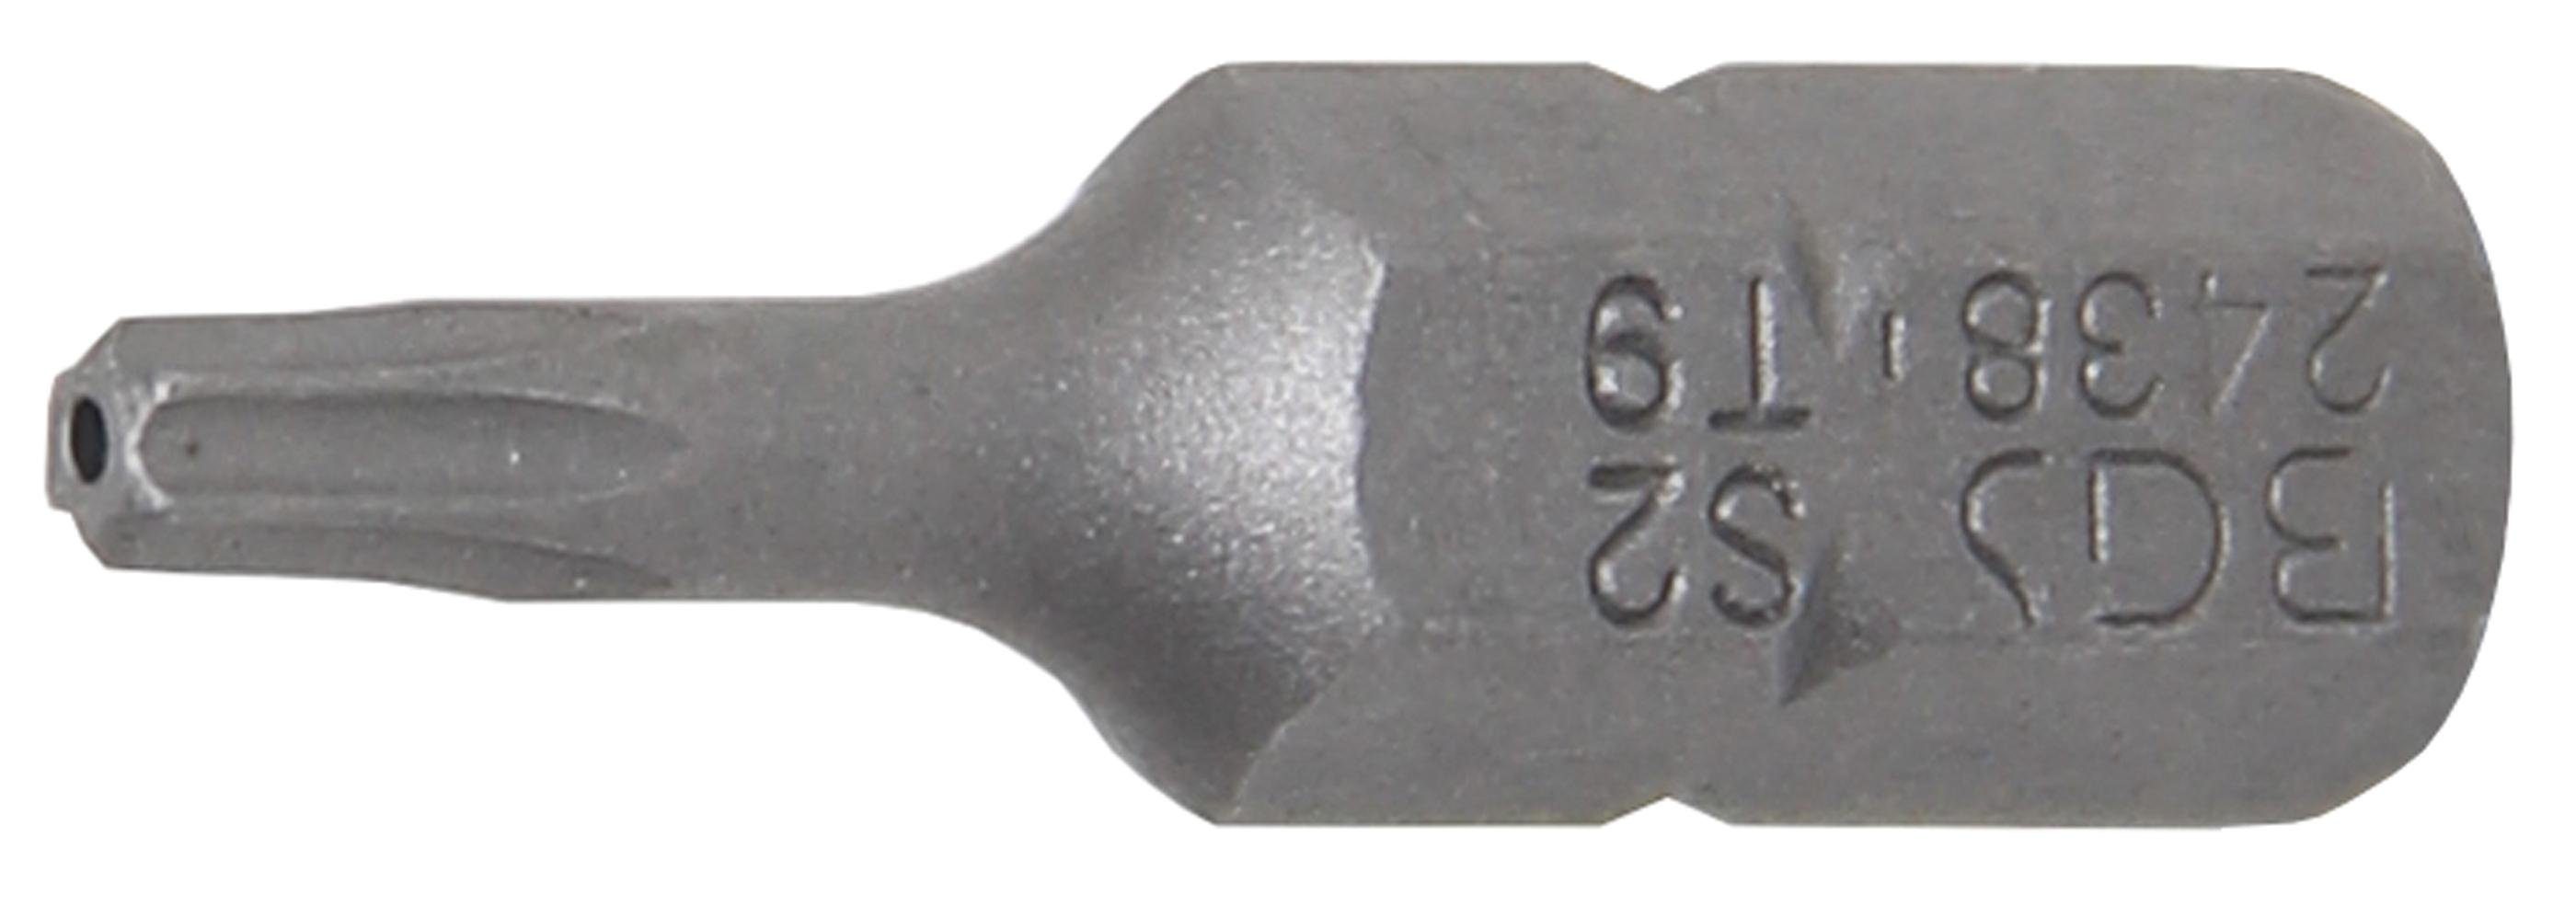 BGS technic Bit-Schraubendreher Bit, Antrieb Außensechskant 6,3 mm (1/4), T-Profil (für Torx) mit Bohrung T9